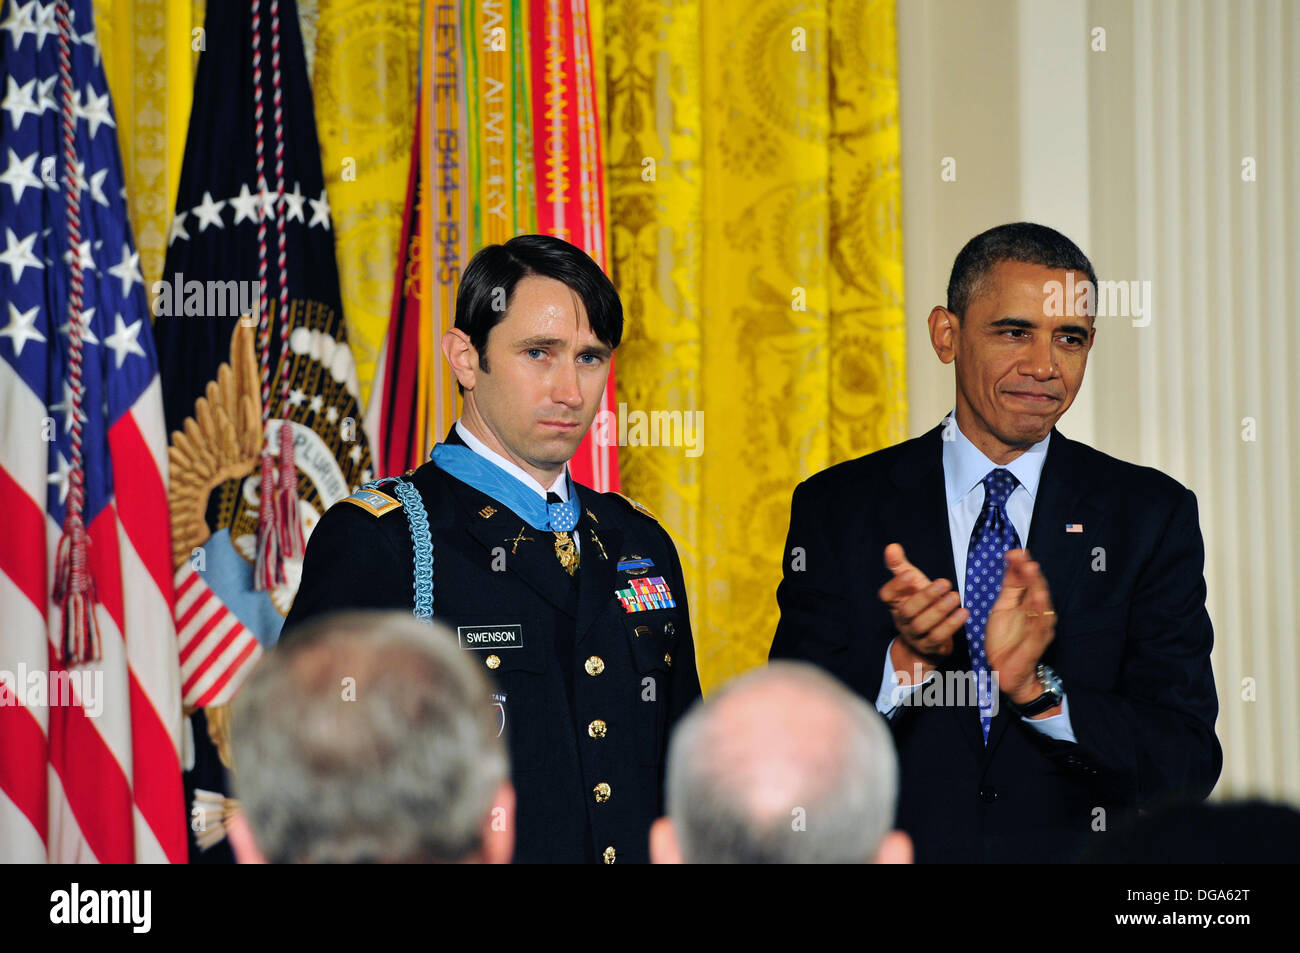 US-Präsident Barack Obama begrüßt ehemalige US Army Captain William D. Swenson nach ihm mit der Medal Of Honor zu präsentieren, während einer Zeremonie im East Room des weißen Hauses 15. Oktober 2013 in Washington, DC. Die Medal Of Honor ist die höchste militärische Auszeichnung des Landes. Stockfoto